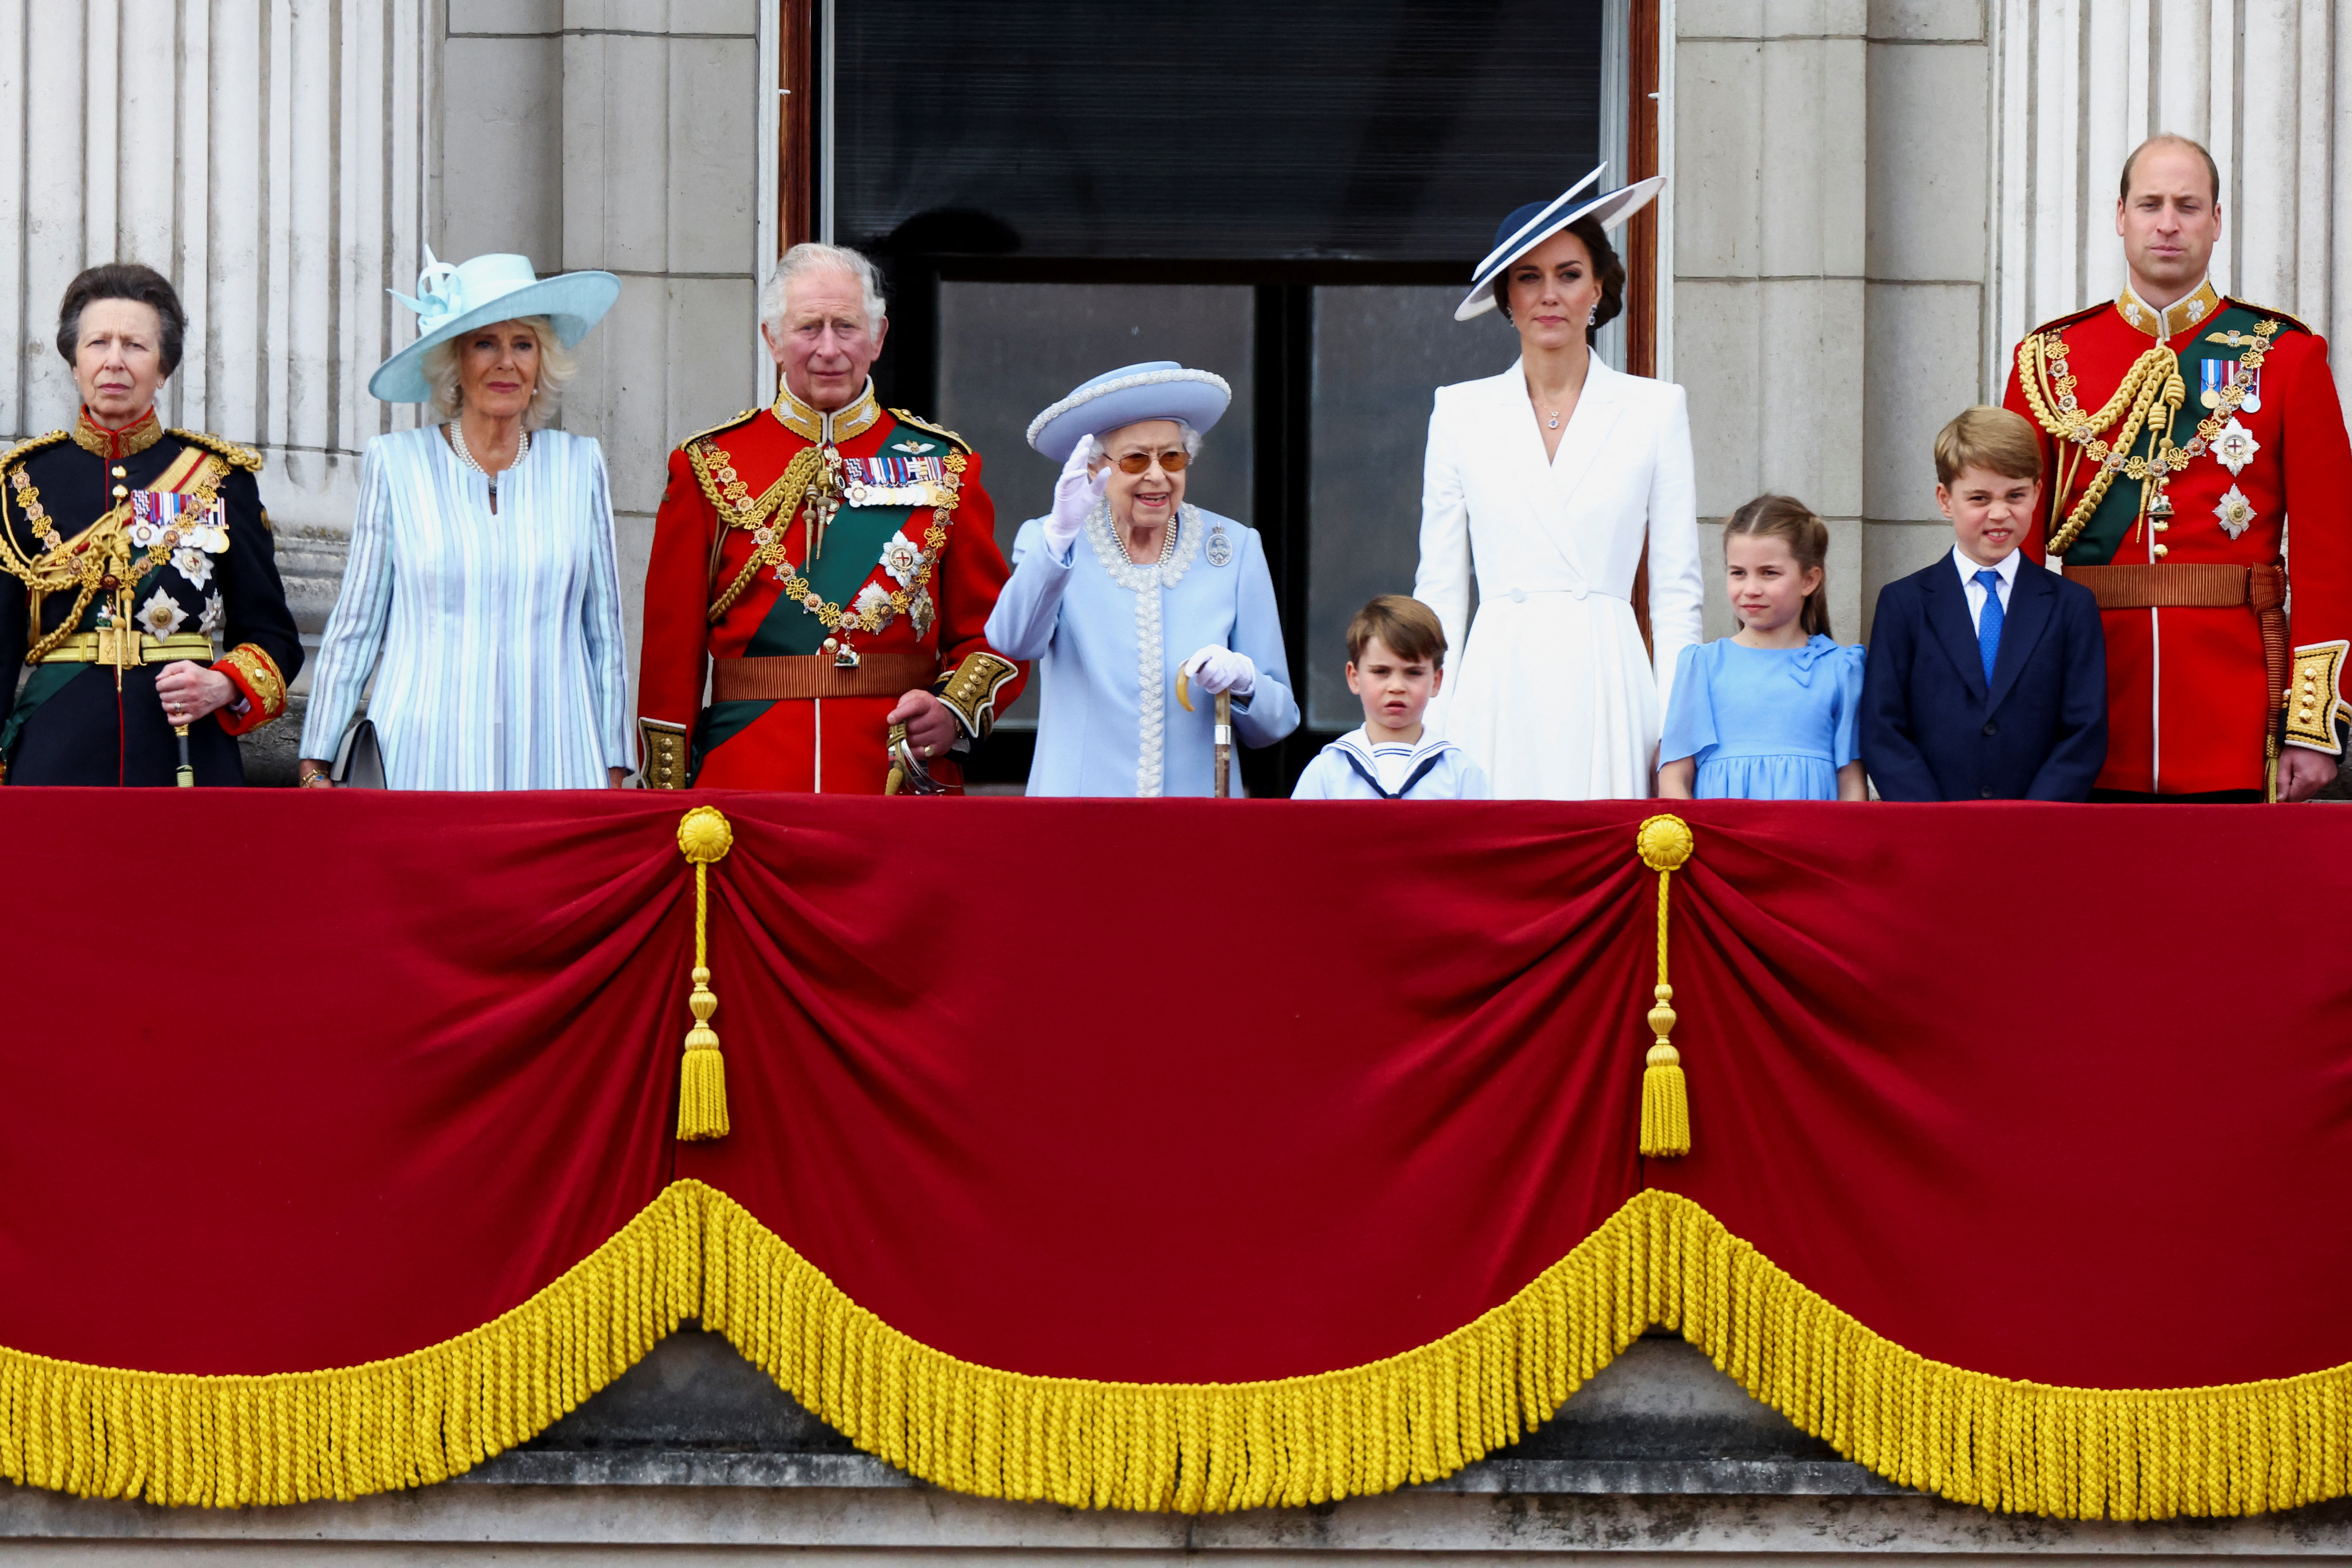 La reina Isabel de Gran Bretaña, Ana, la princesa real, el príncipe Carlos, Camila, la duquesa de Cornualles, el príncipe William y Kate, duquesa de Cambridge, junto con la princesa Charlotte, el príncipe George y el príncipe Louis aparecen en el balcón del Palacio de Buckingham como parte de Trooping the Colour desfile durante las celebraciones del Jubileo de Platino de la Reina en Londres, Gran Bretaña, el 2 de junio de 2022. REUTERS/Hannah McKay